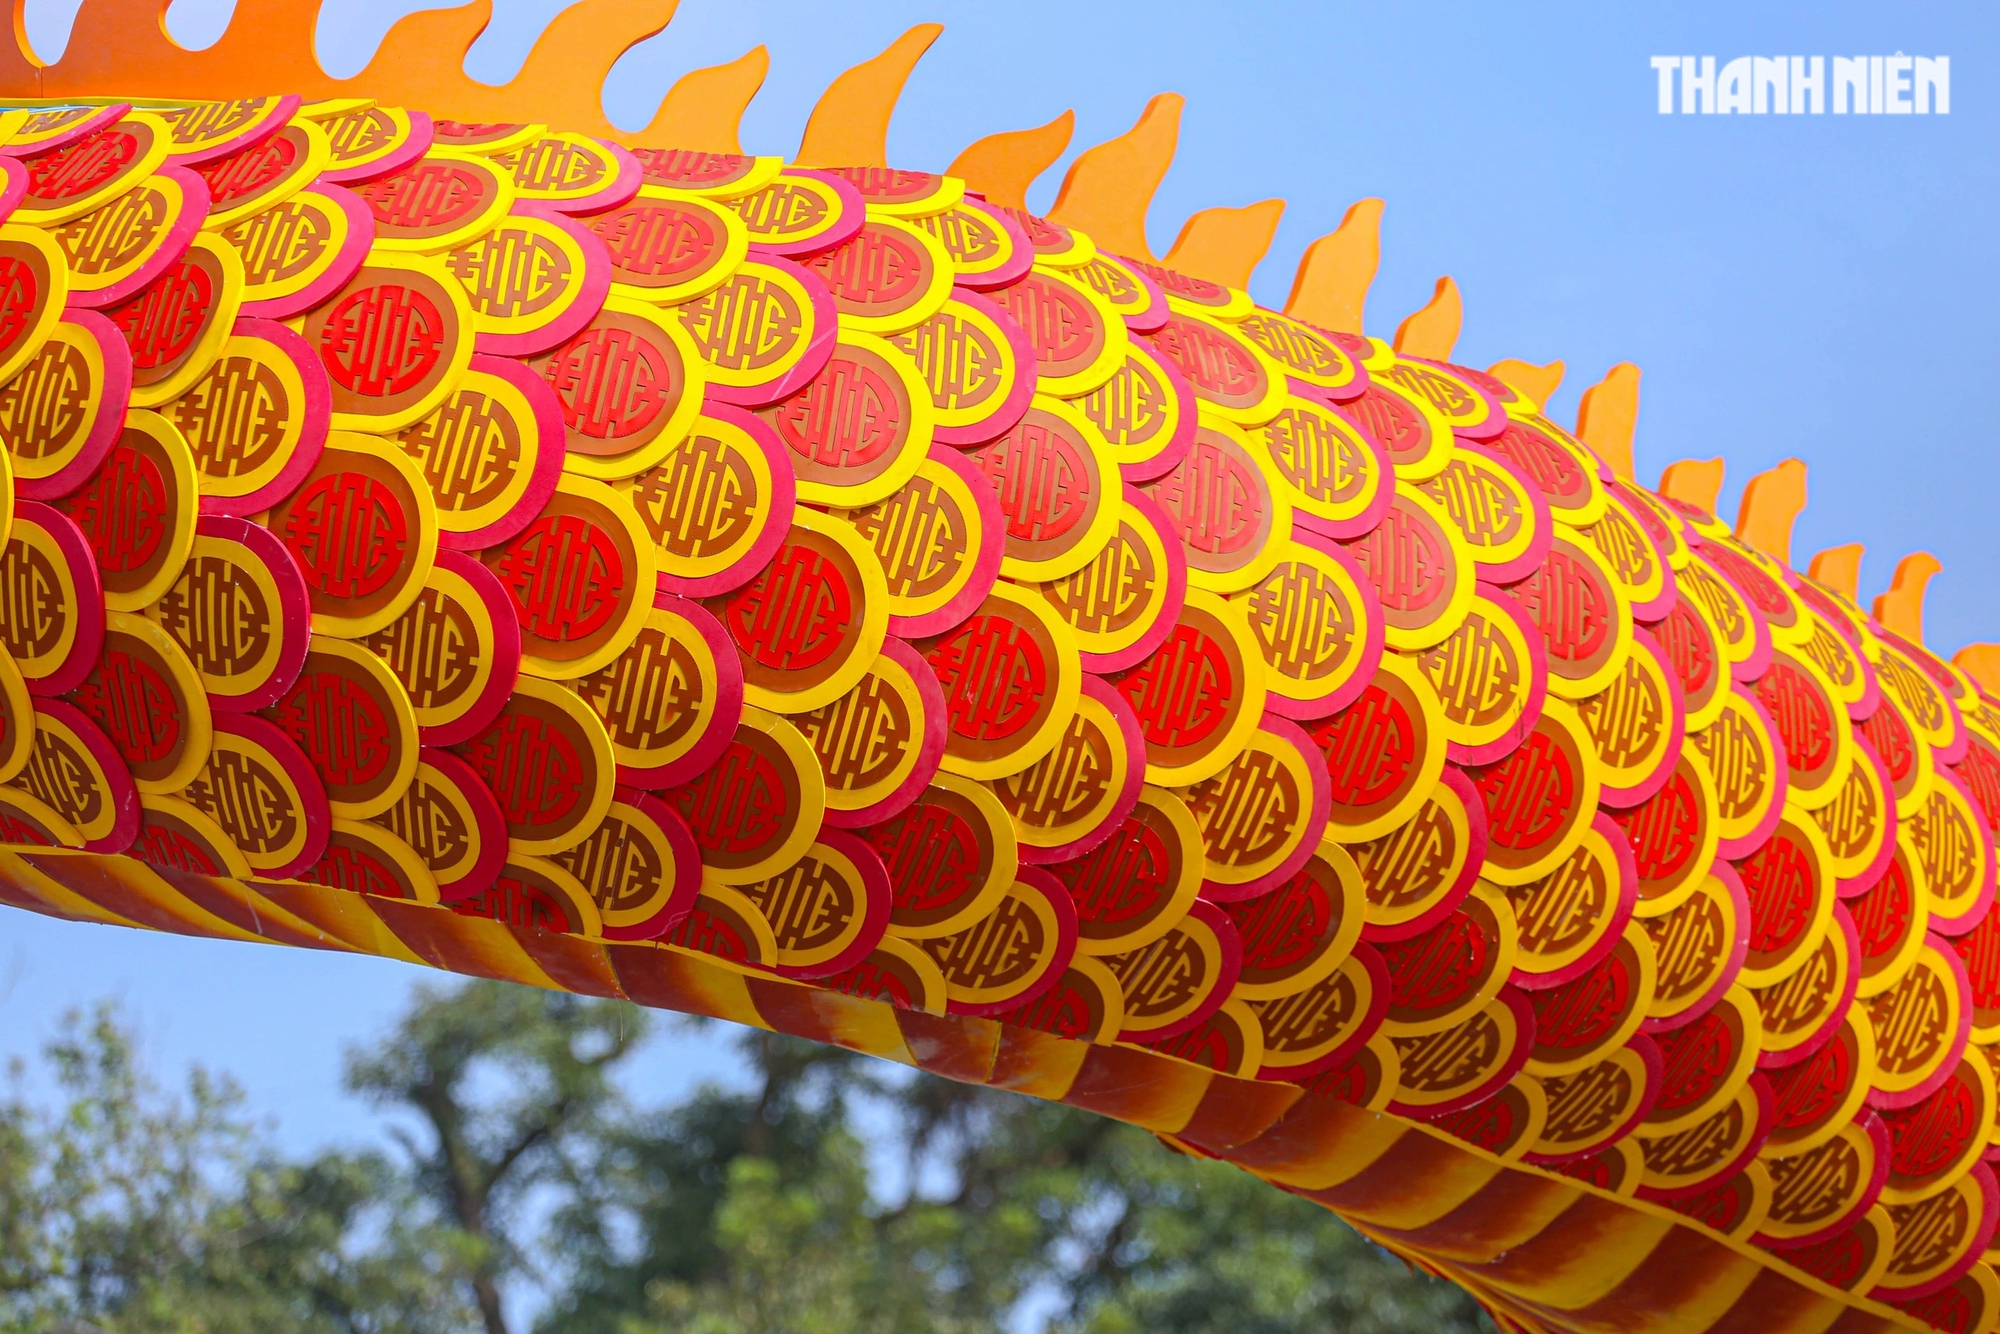 Linh vật rồng xứ Huế khổng lồ uốn lượn: Được tạo hình từ kiến trúc và bảo vật triều Nguyễn- Ảnh 4.